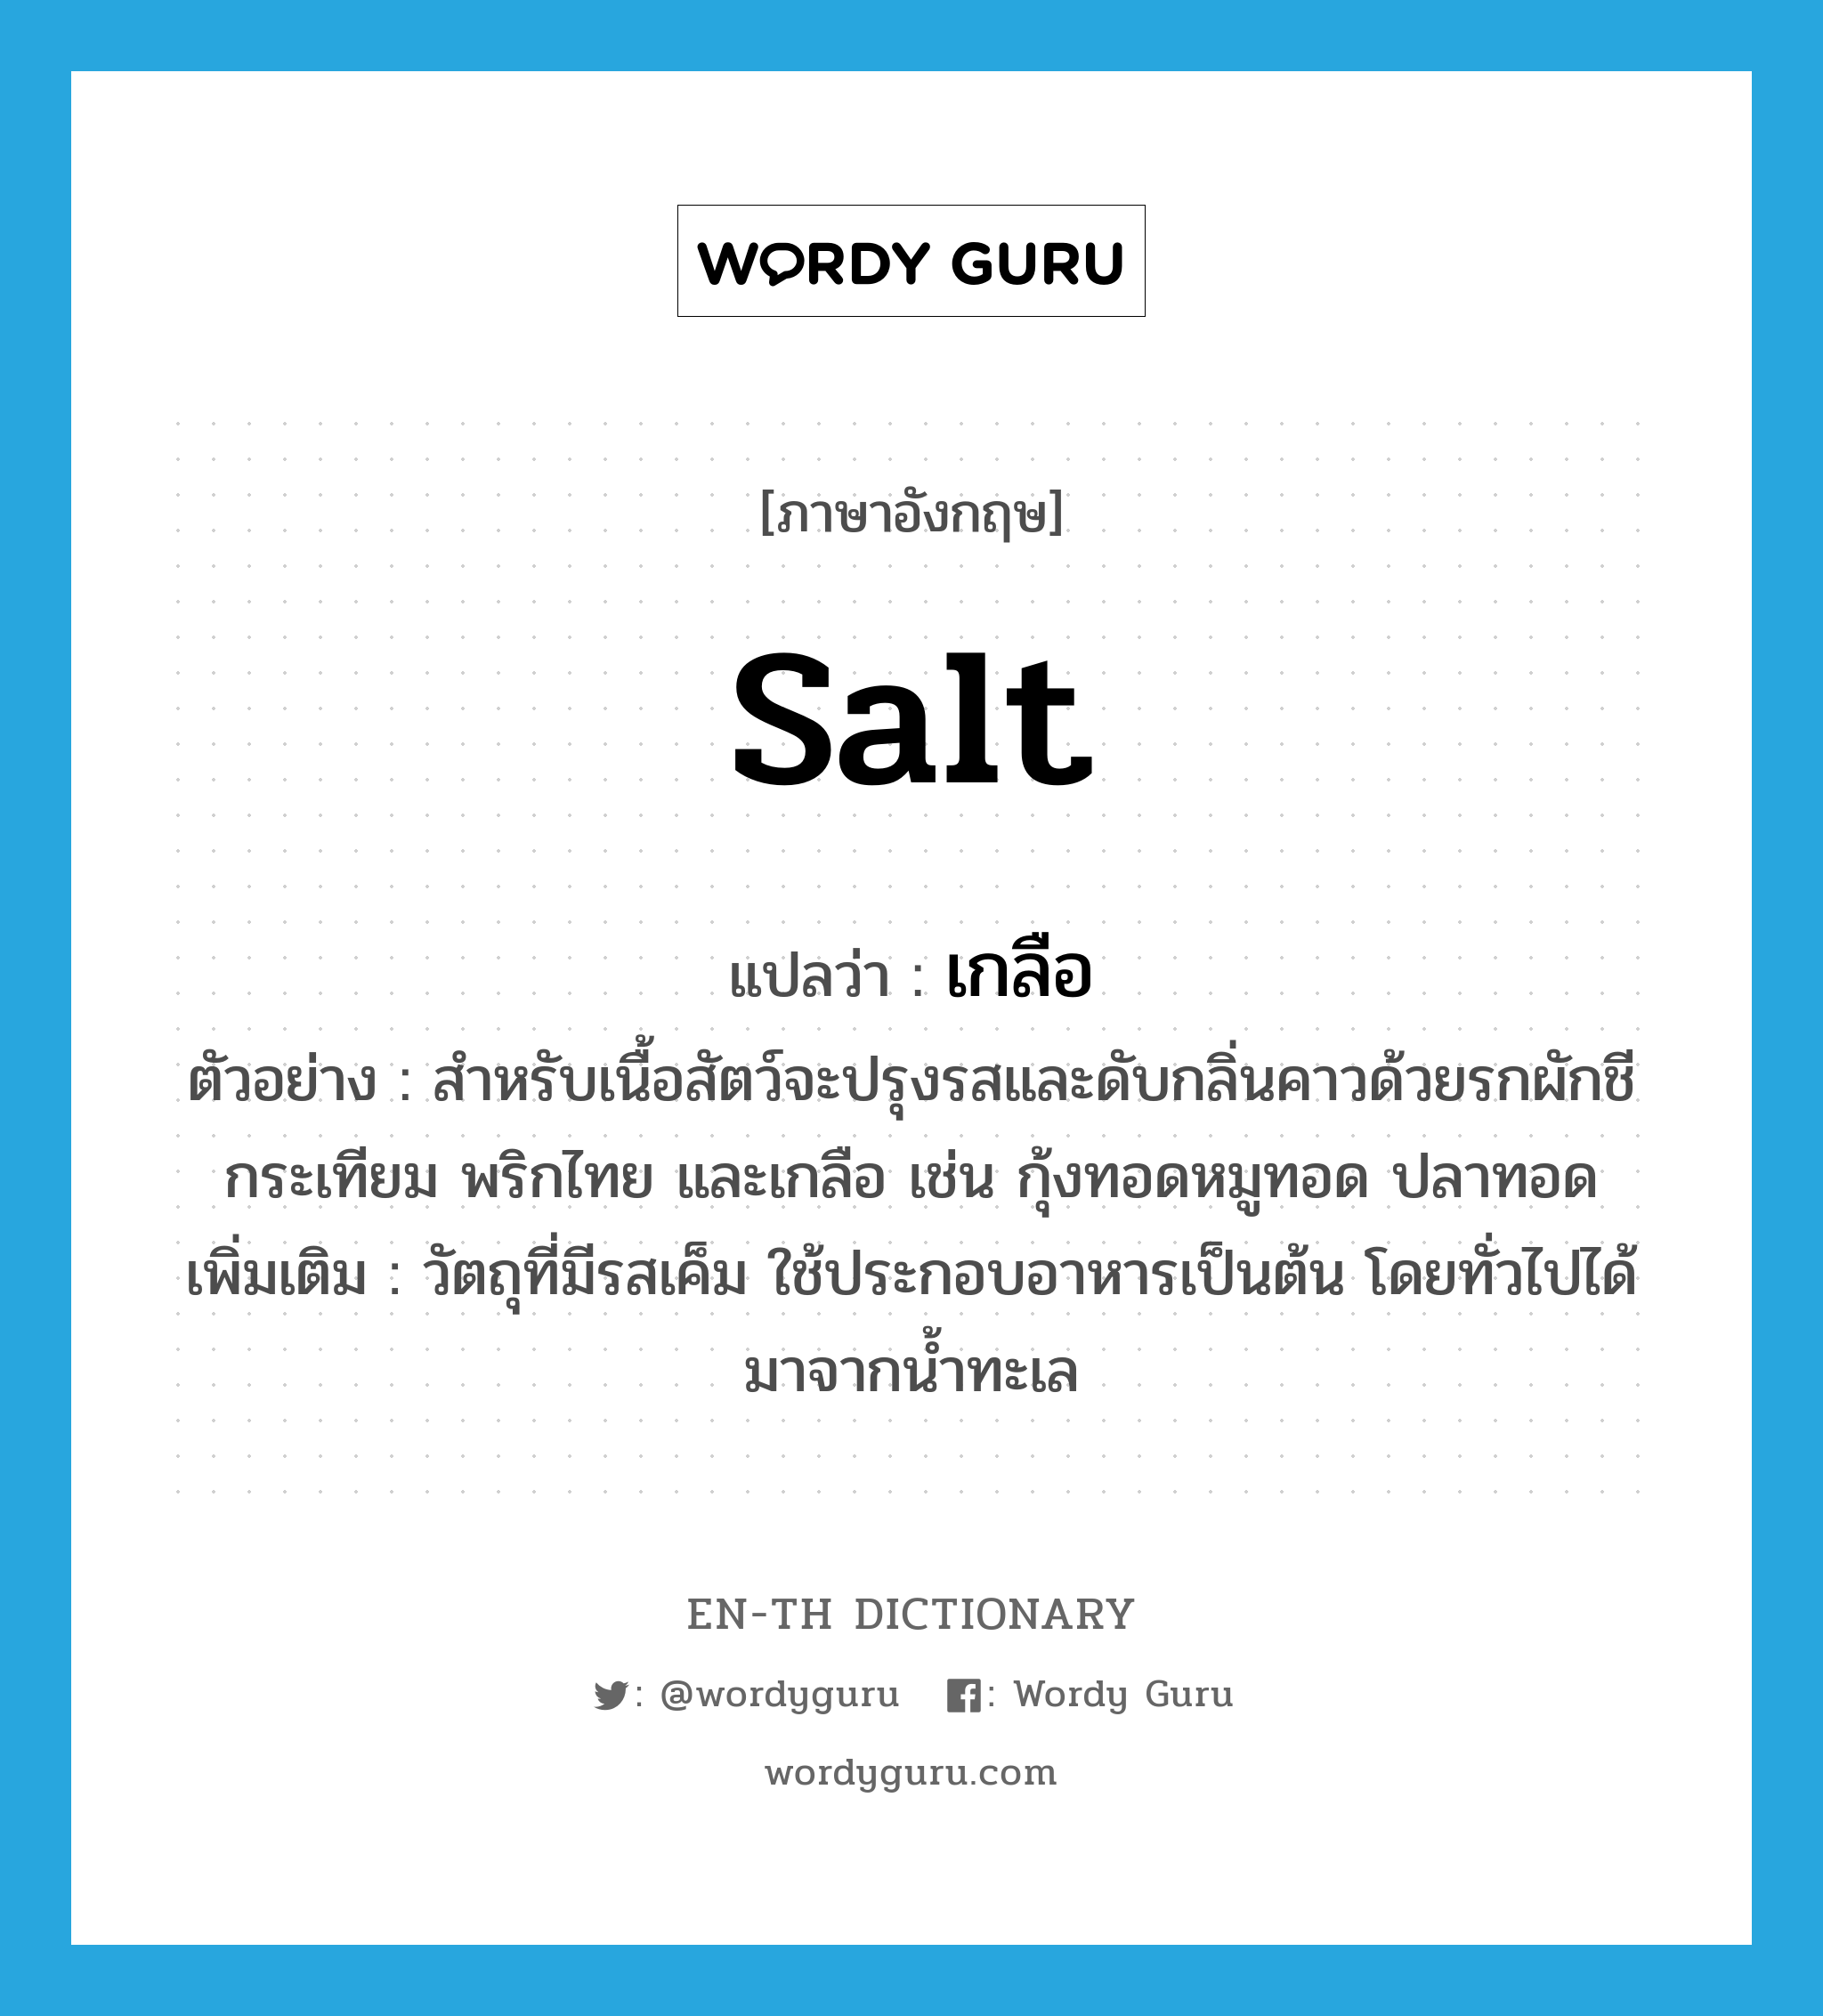 salt แปลว่า?, คำศัพท์ภาษาอังกฤษ salt แปลว่า เกลือ ประเภท N ตัวอย่าง สำหรับเนื้อสัตว์จะปรุงรสและดับกลิ่นคาวด้วยรกผักชี กระเทียม พริกไทย และเกลือ เช่น กุ้งทอดหมูทอด ปลาทอด เพิ่มเติม วัตถุที่มีรสเค็ม ใช้ประกอบอาหารเป็นต้น โดยทั่วไปได้มาจากน้ำทะเล หมวด N